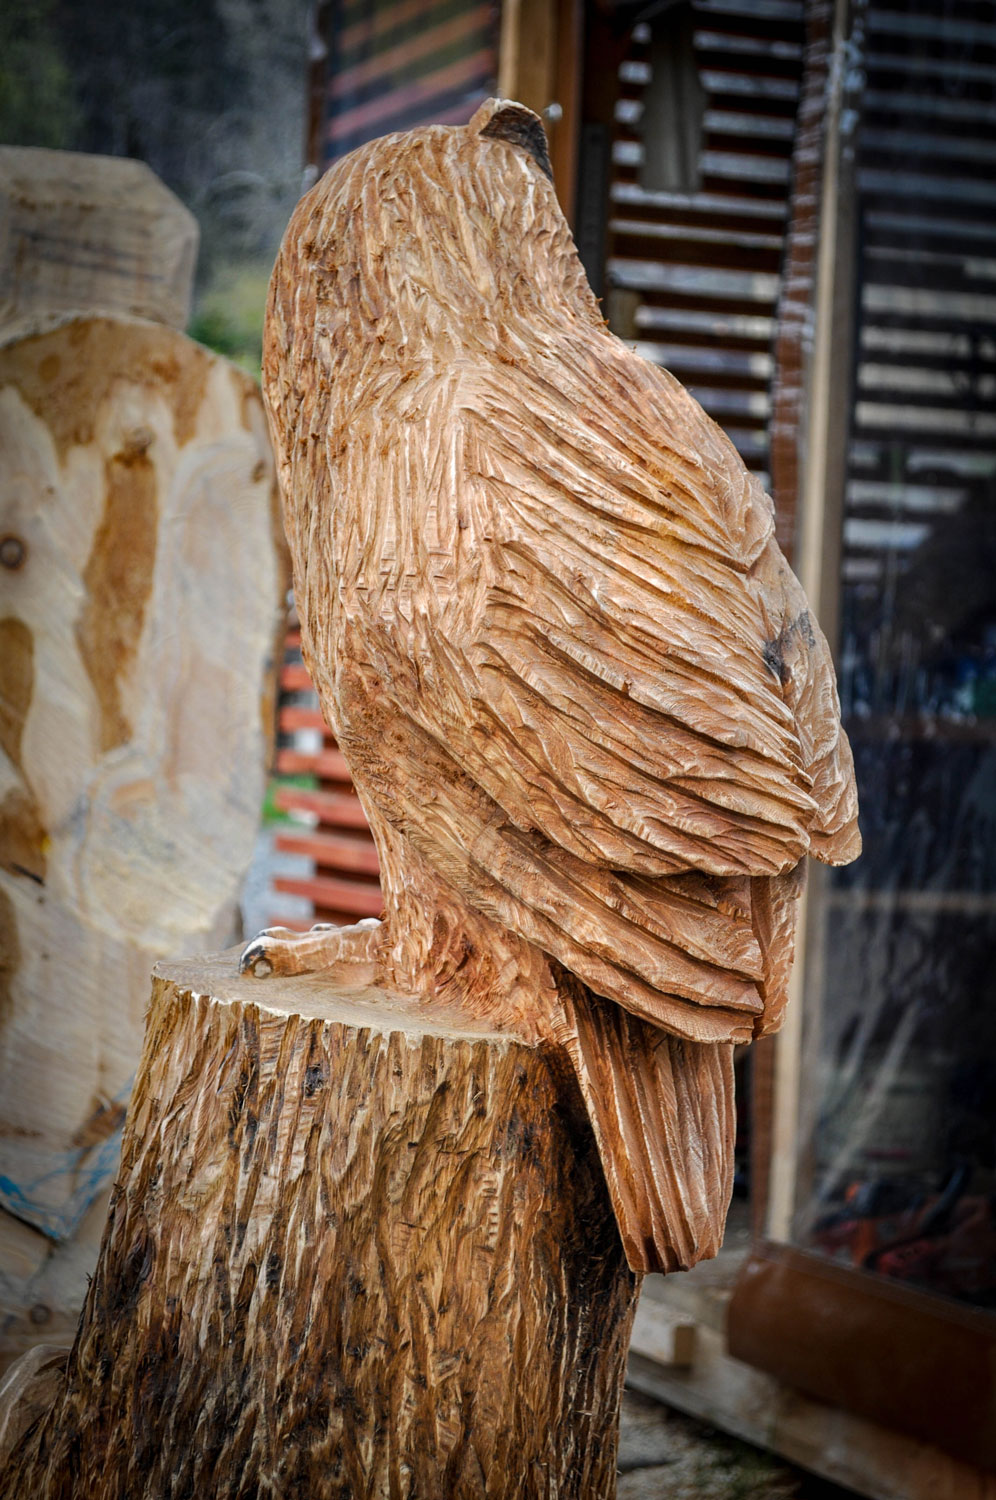 rezbar-drevorezba-vyrezavani-carving-wood-drevo-socha-bysta-vyr-120cm-radekzdrazil-20210425-011